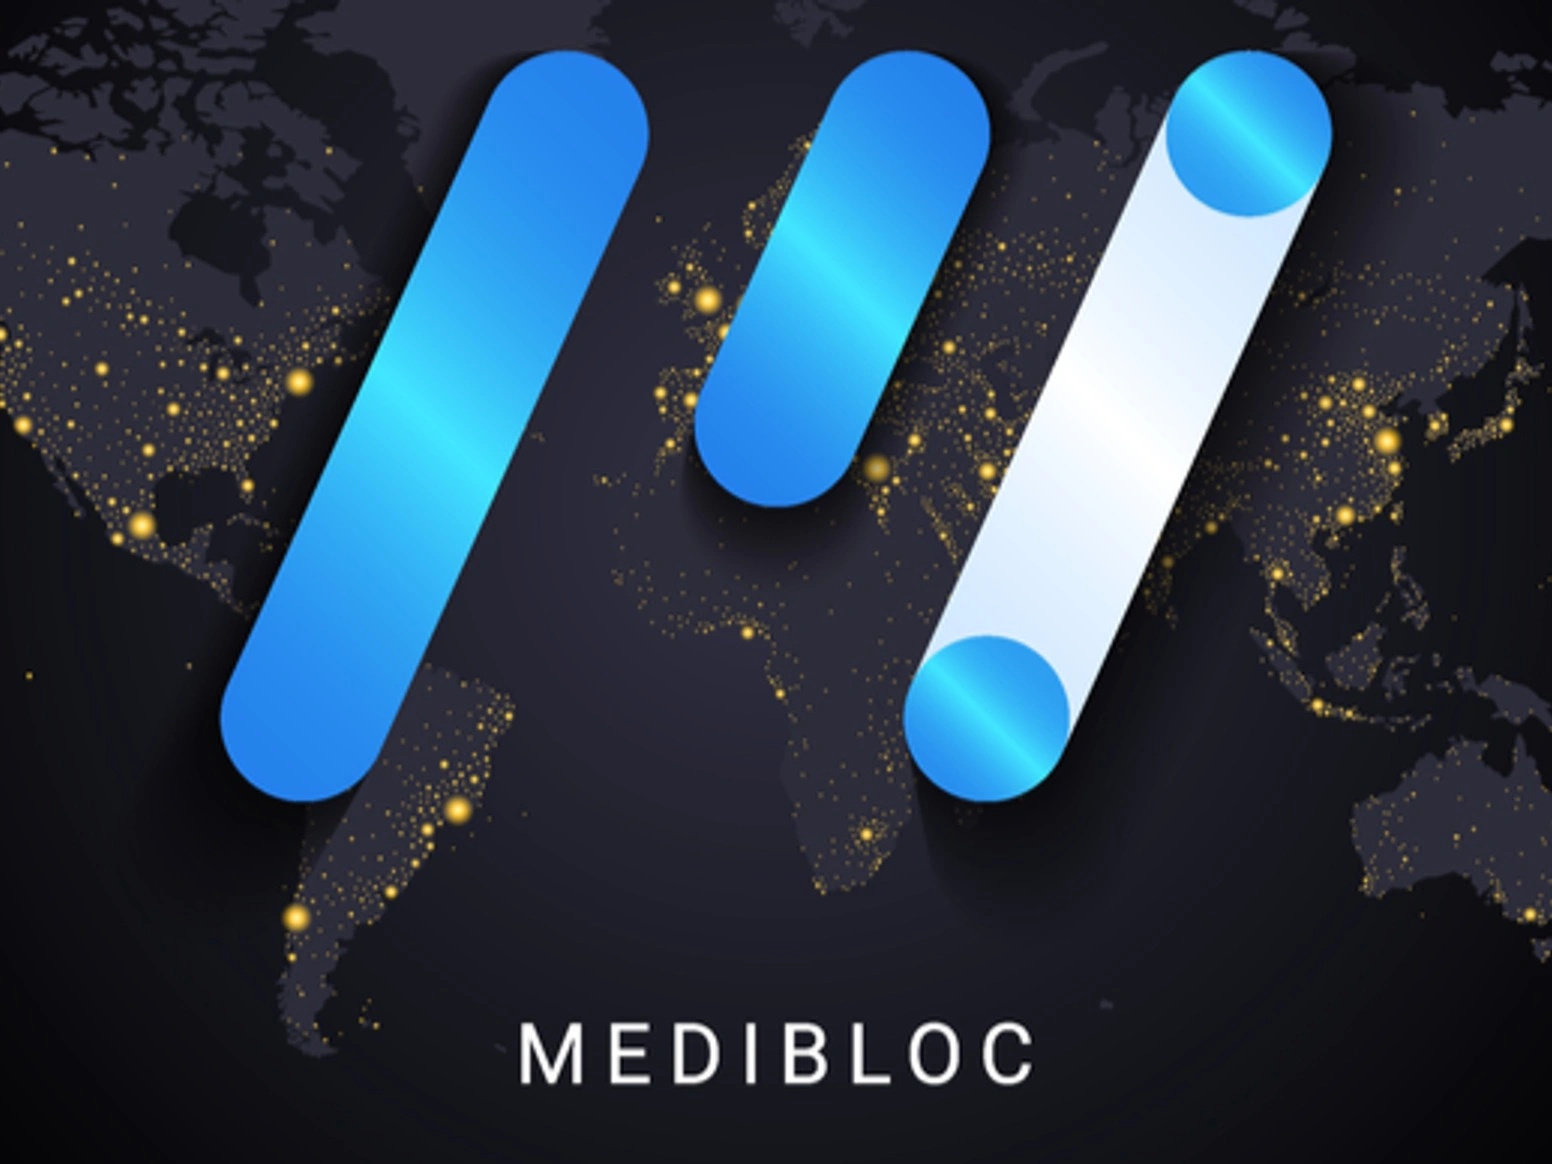 MediBloc